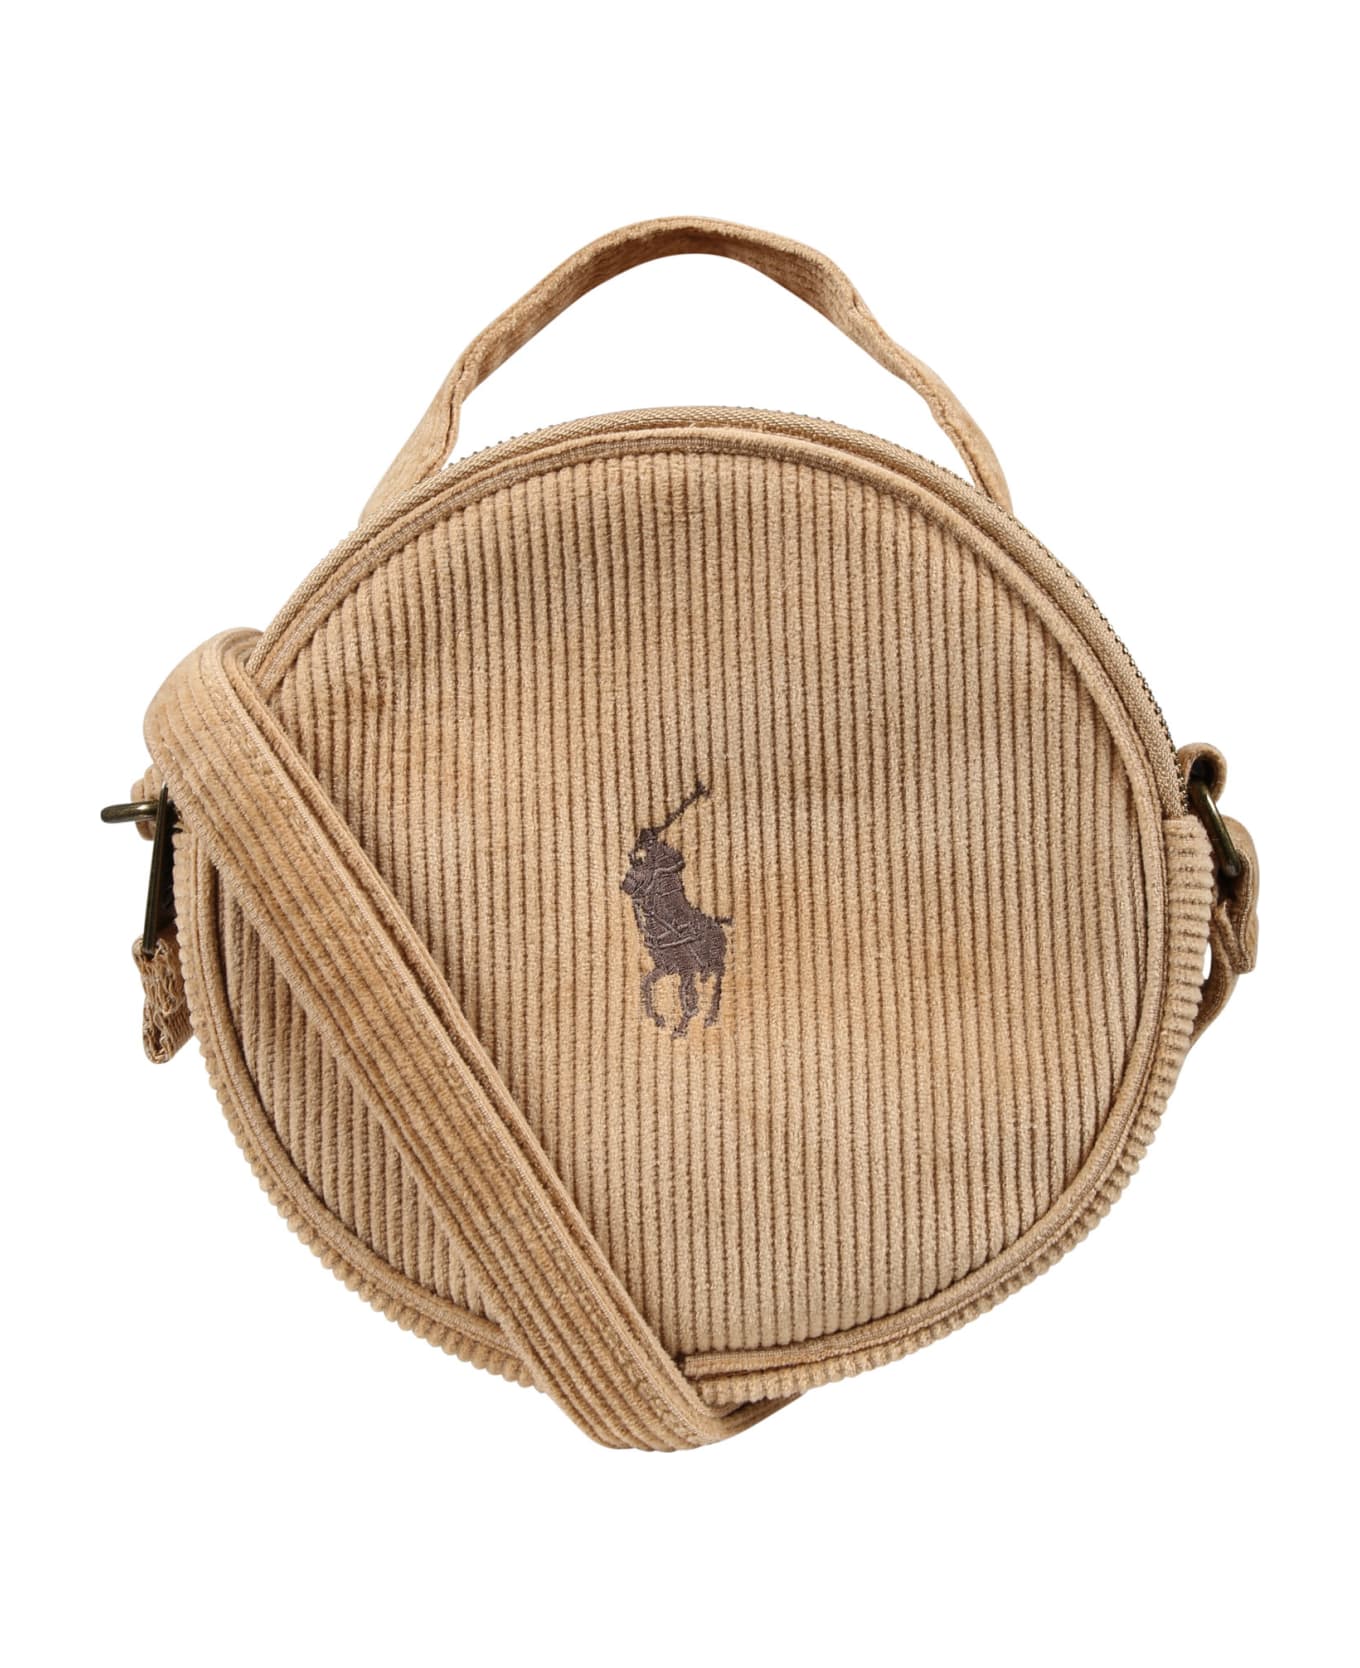 Ralph Lauren Beige Bag For Girl With Logo - Beige